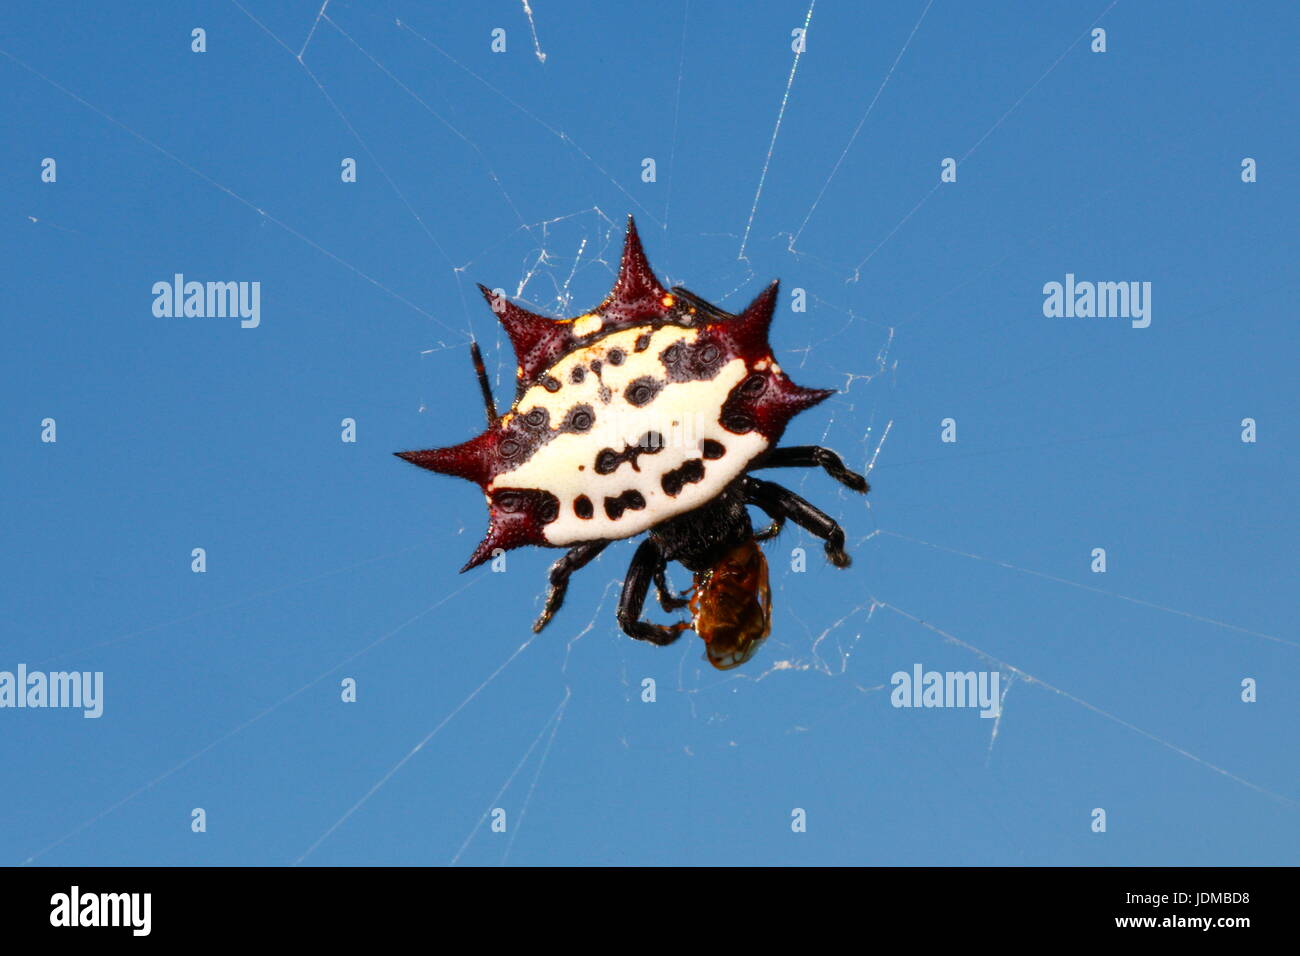 Eine stachelige Kugel Weaver Spinne, Gasteracantha Cancriformis, auf einer Webseite. Stockfoto